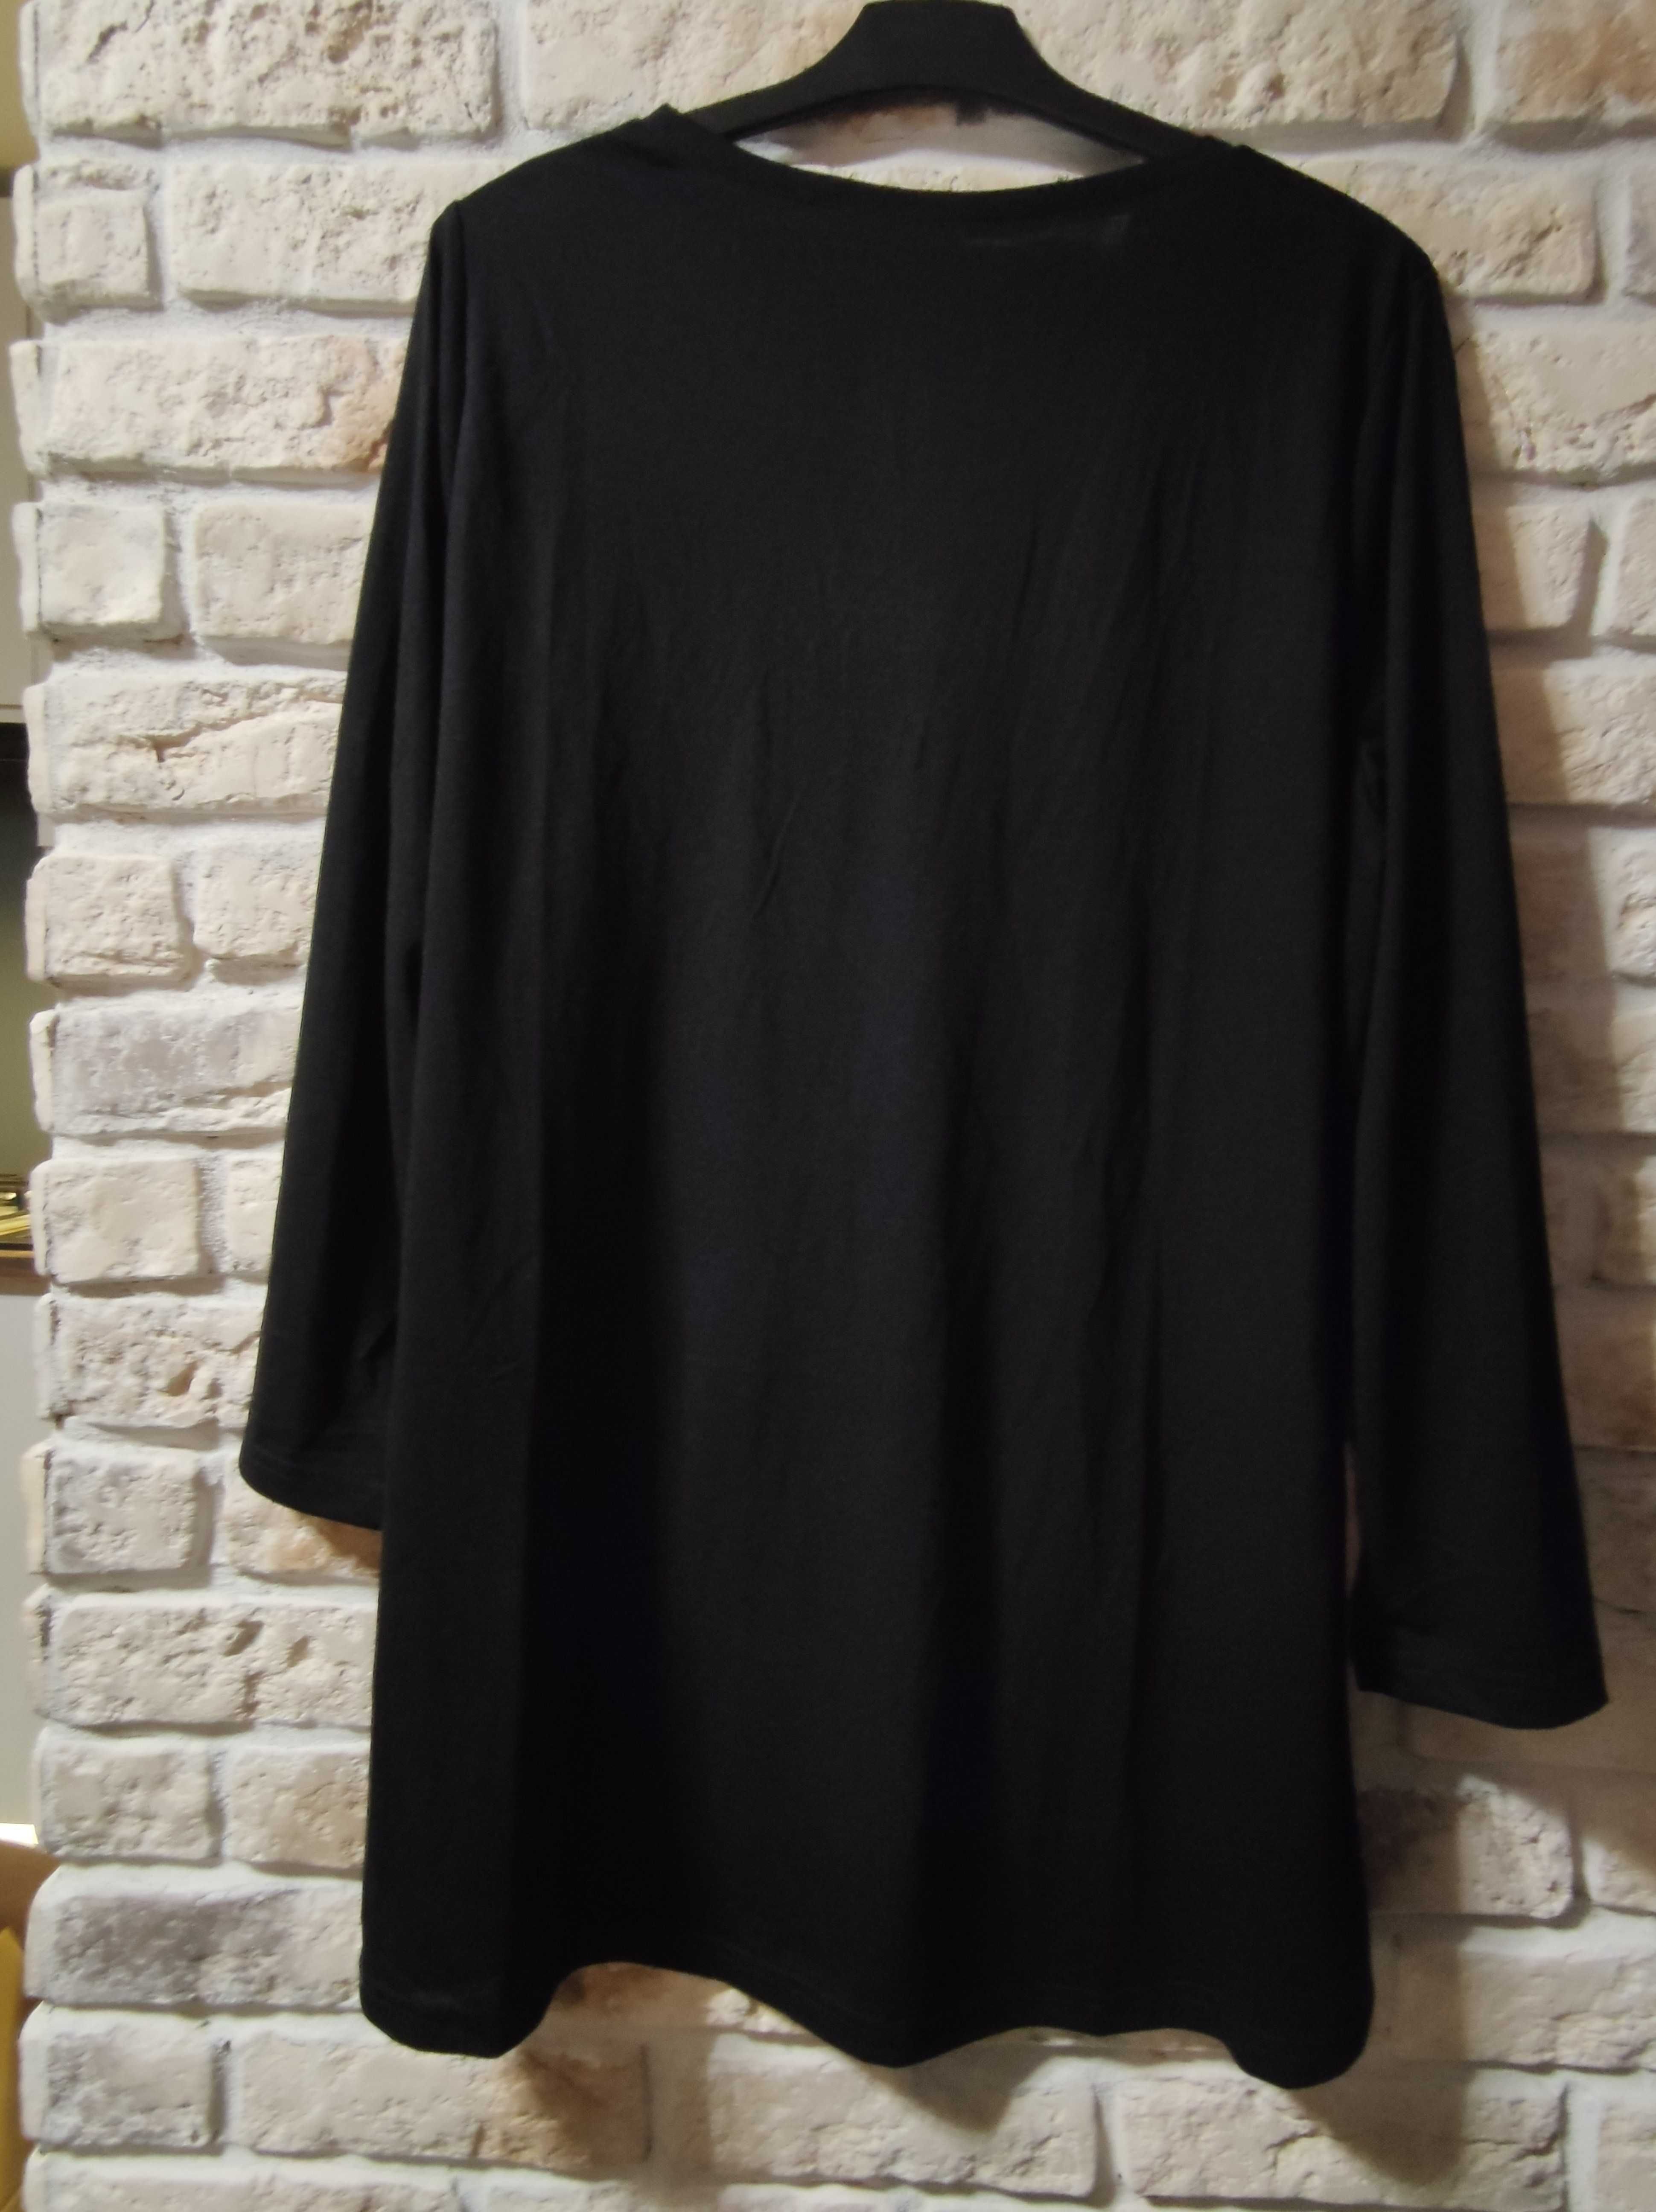 Czarna bluzka/tunika z długim rękawem, rozmiar 50/52